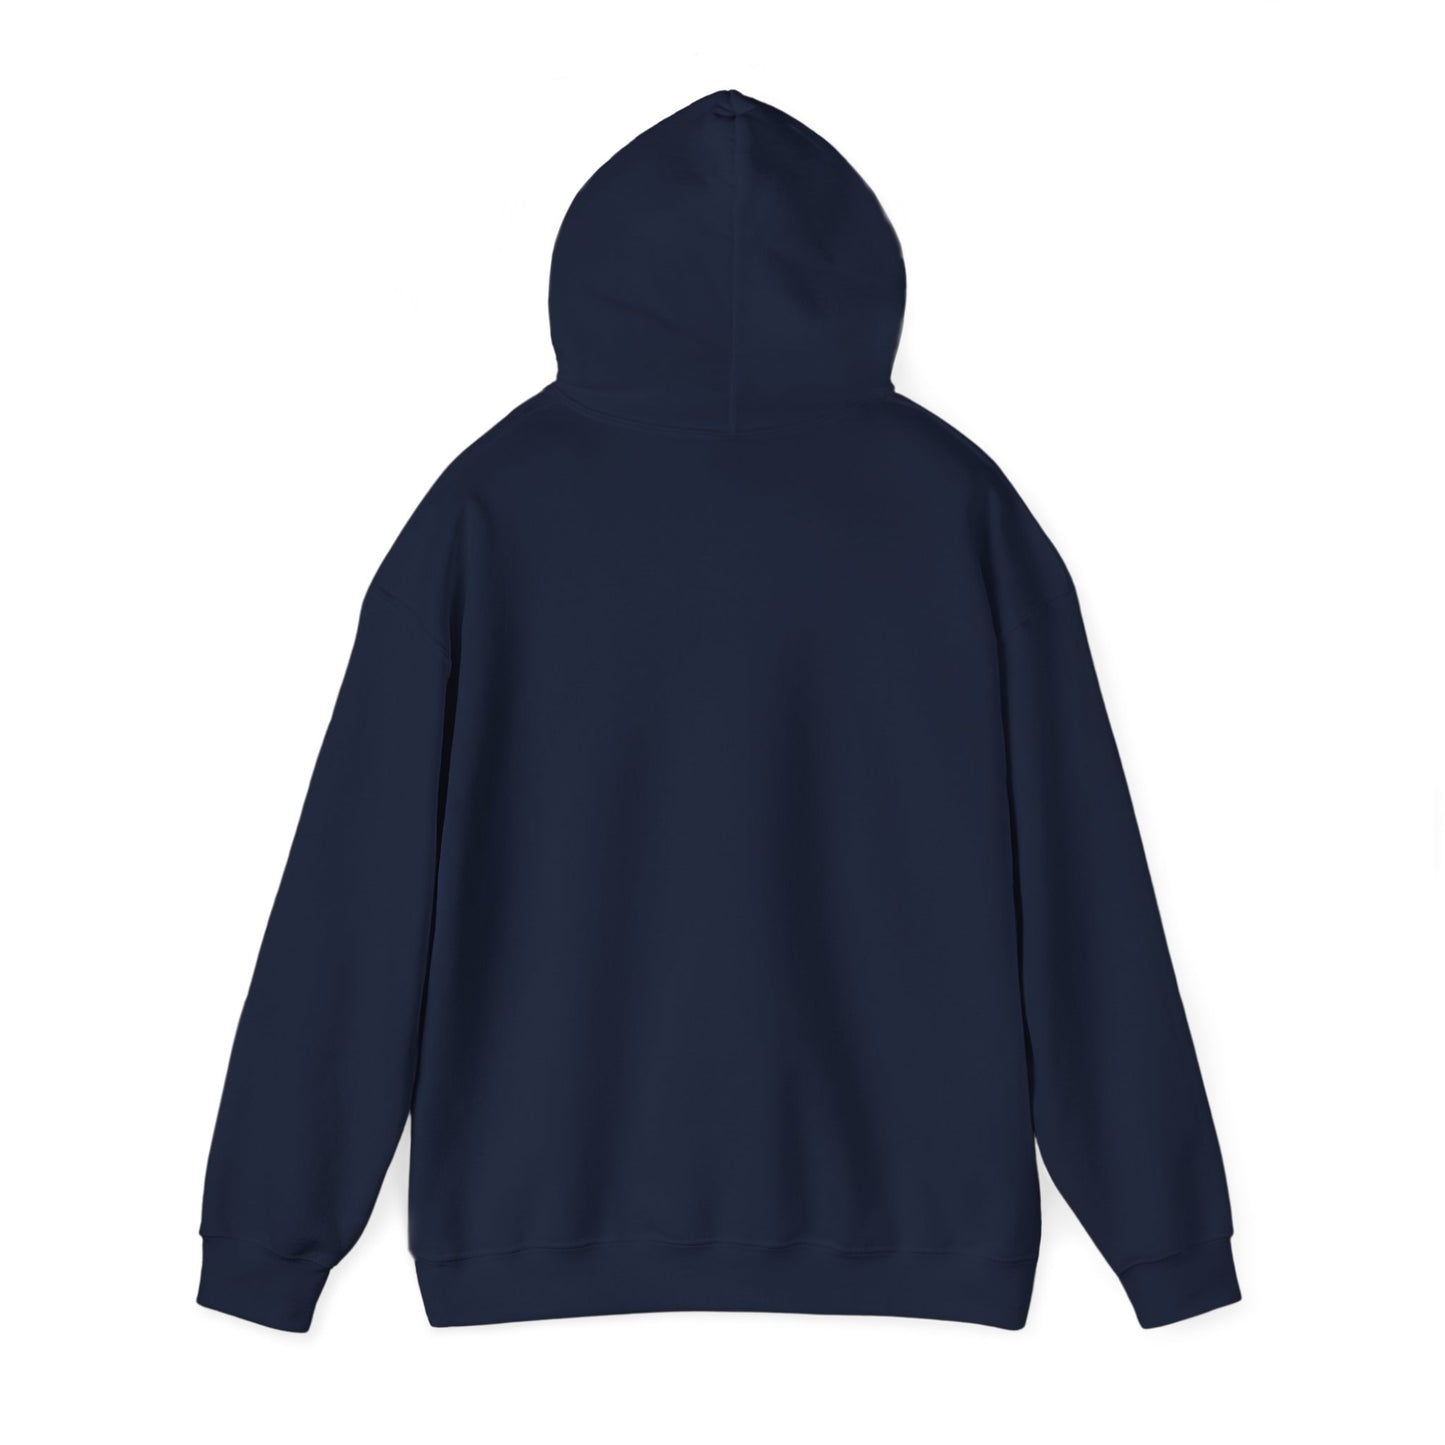 Centennial - Men's Heavy Blend Hooded Sweatshirt - Class Of 2028